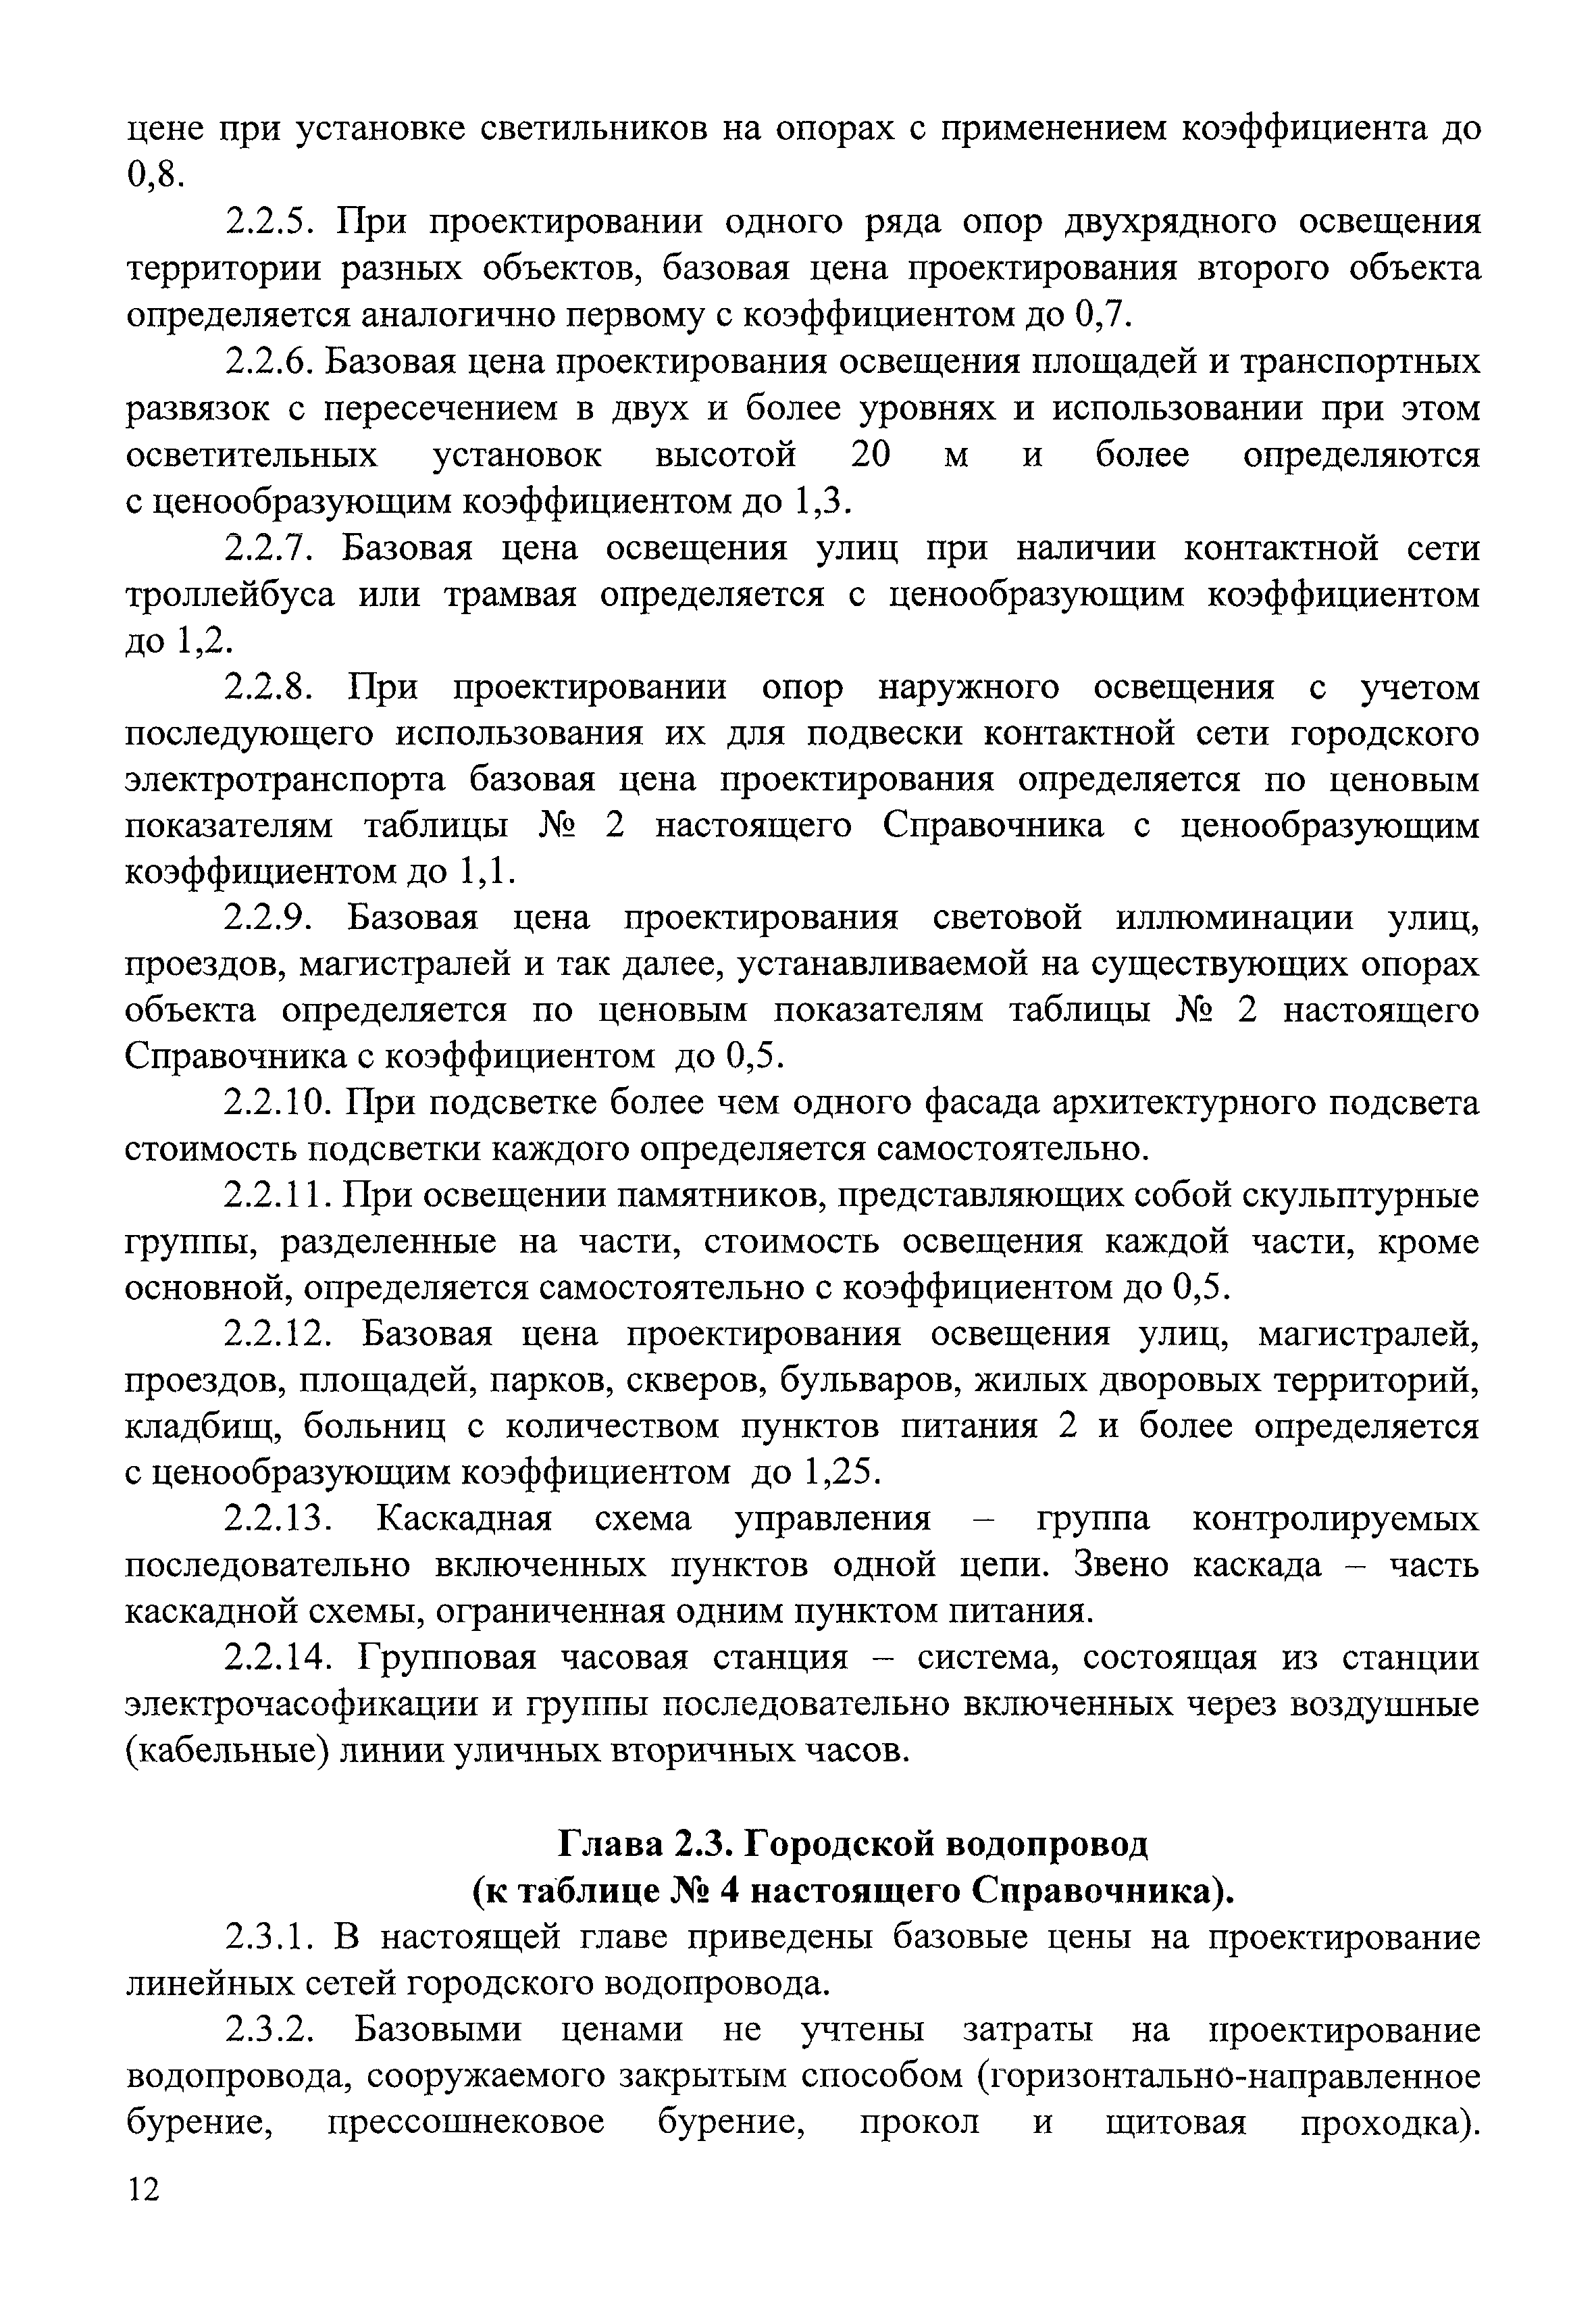 СБЦП 81-2001-07